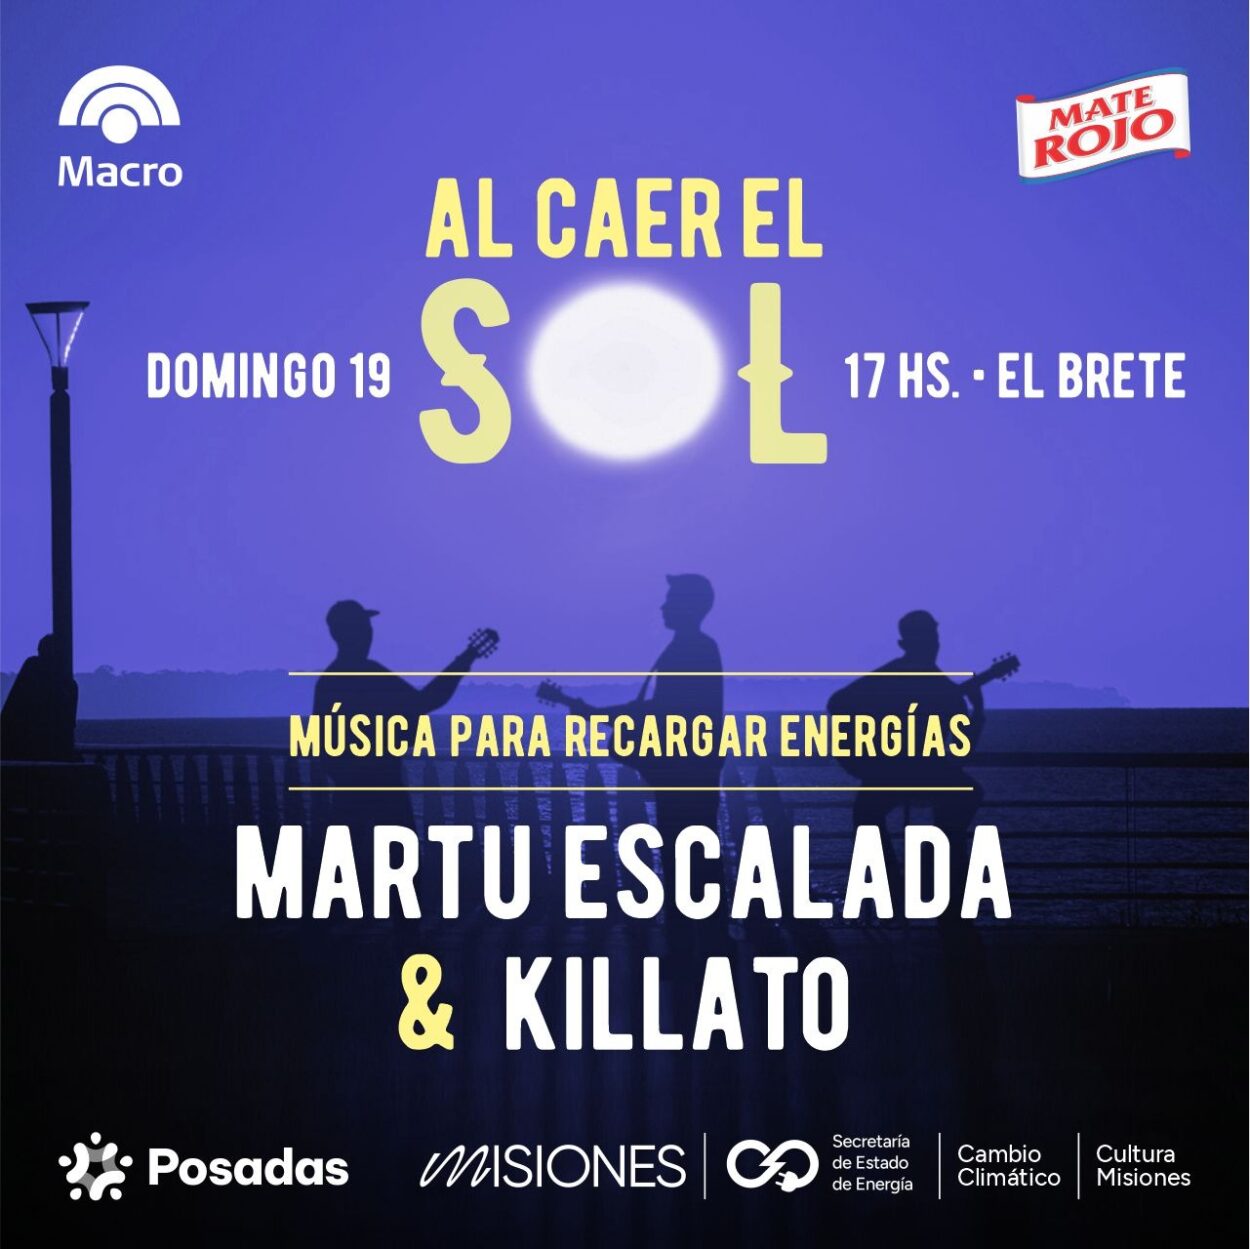 Martu Escalada y Killato: rock y música urbana este domingo “Al caer el sol en El Brete” imagen-14